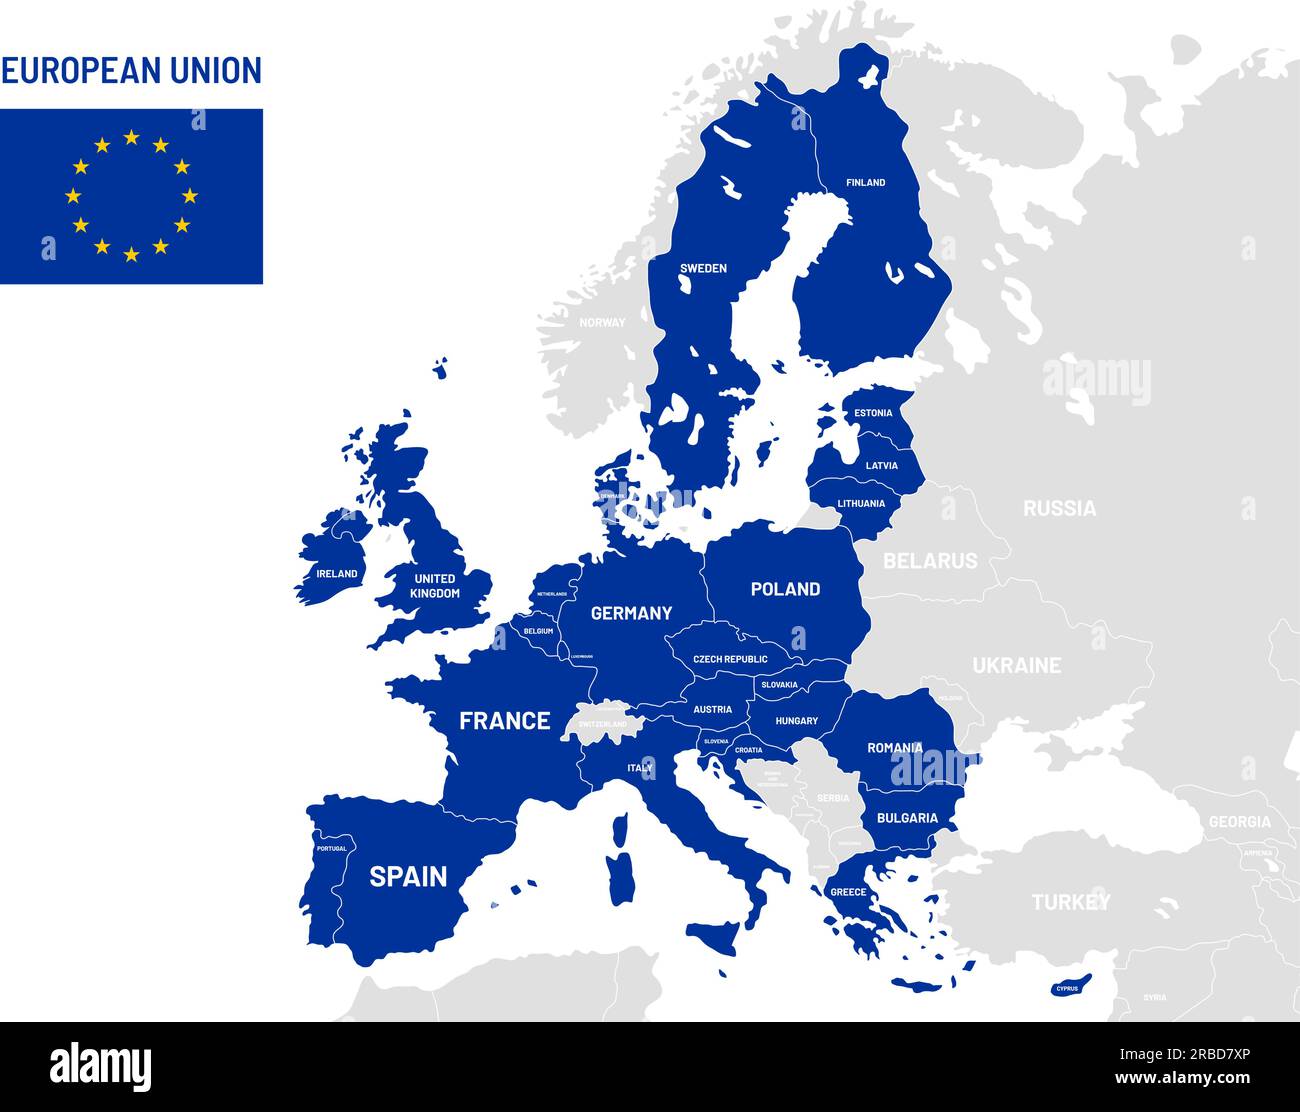 Mappa dei paesi dell'Unione europea. Nomi dei paesi membri dell'UE, mappe delle località geografiche europee. Paese membro politico terra, nazionalismo geografia globo cartograp Illustrazione Vettoriale